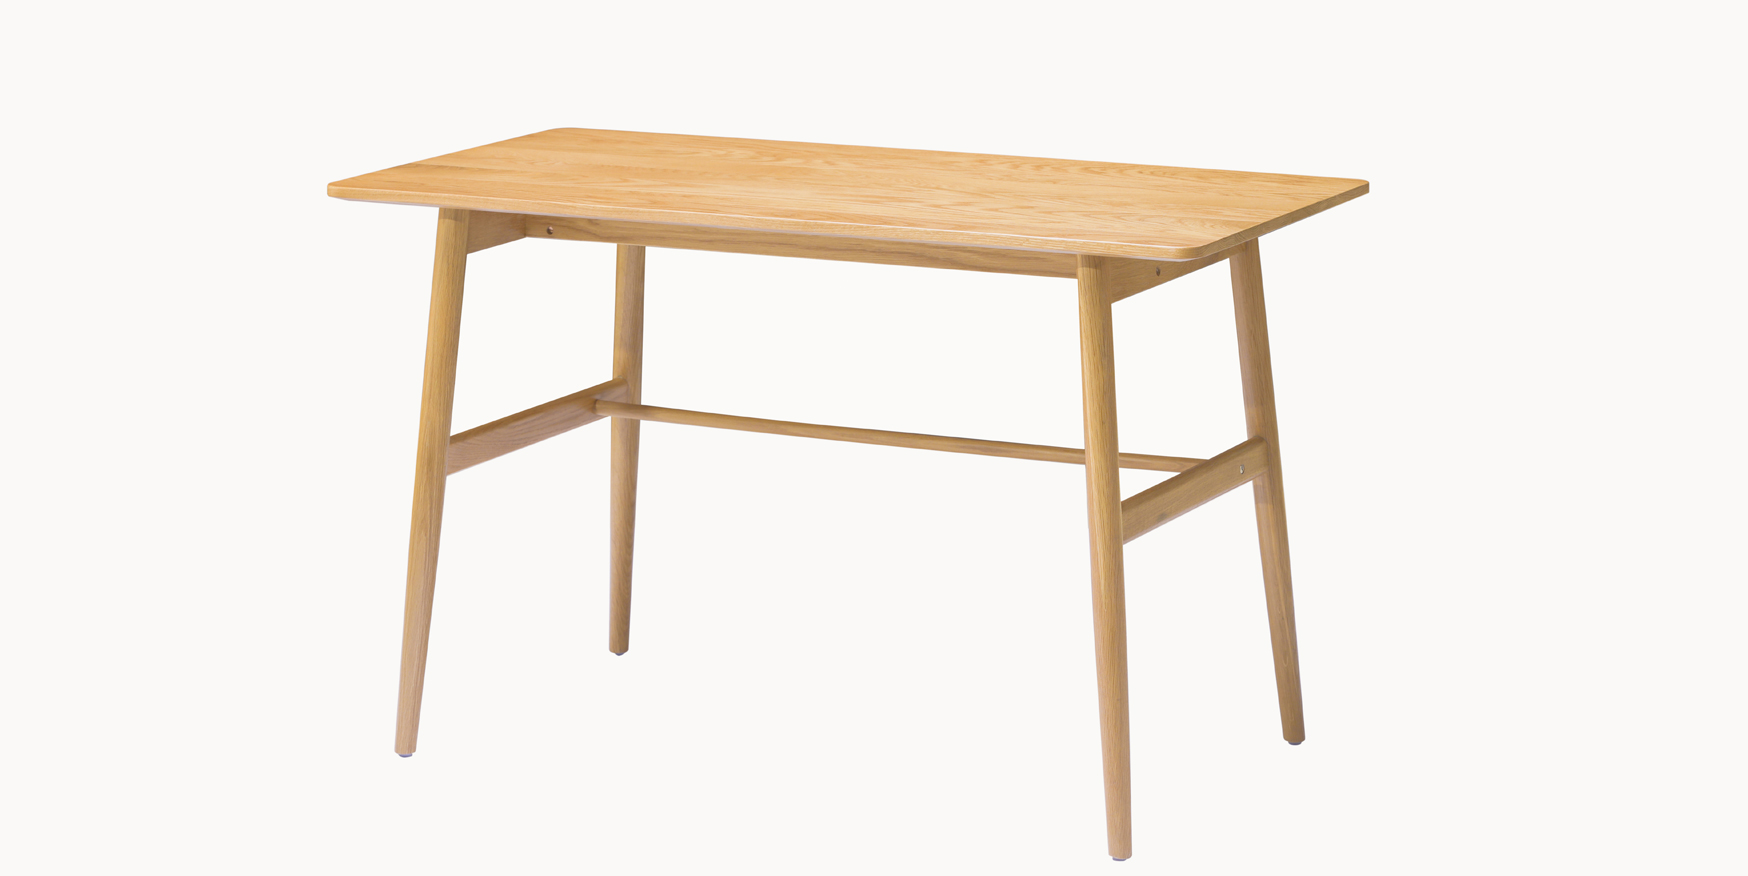 SZ2 Modern Bent Wooden Desk Solid Wood Desk